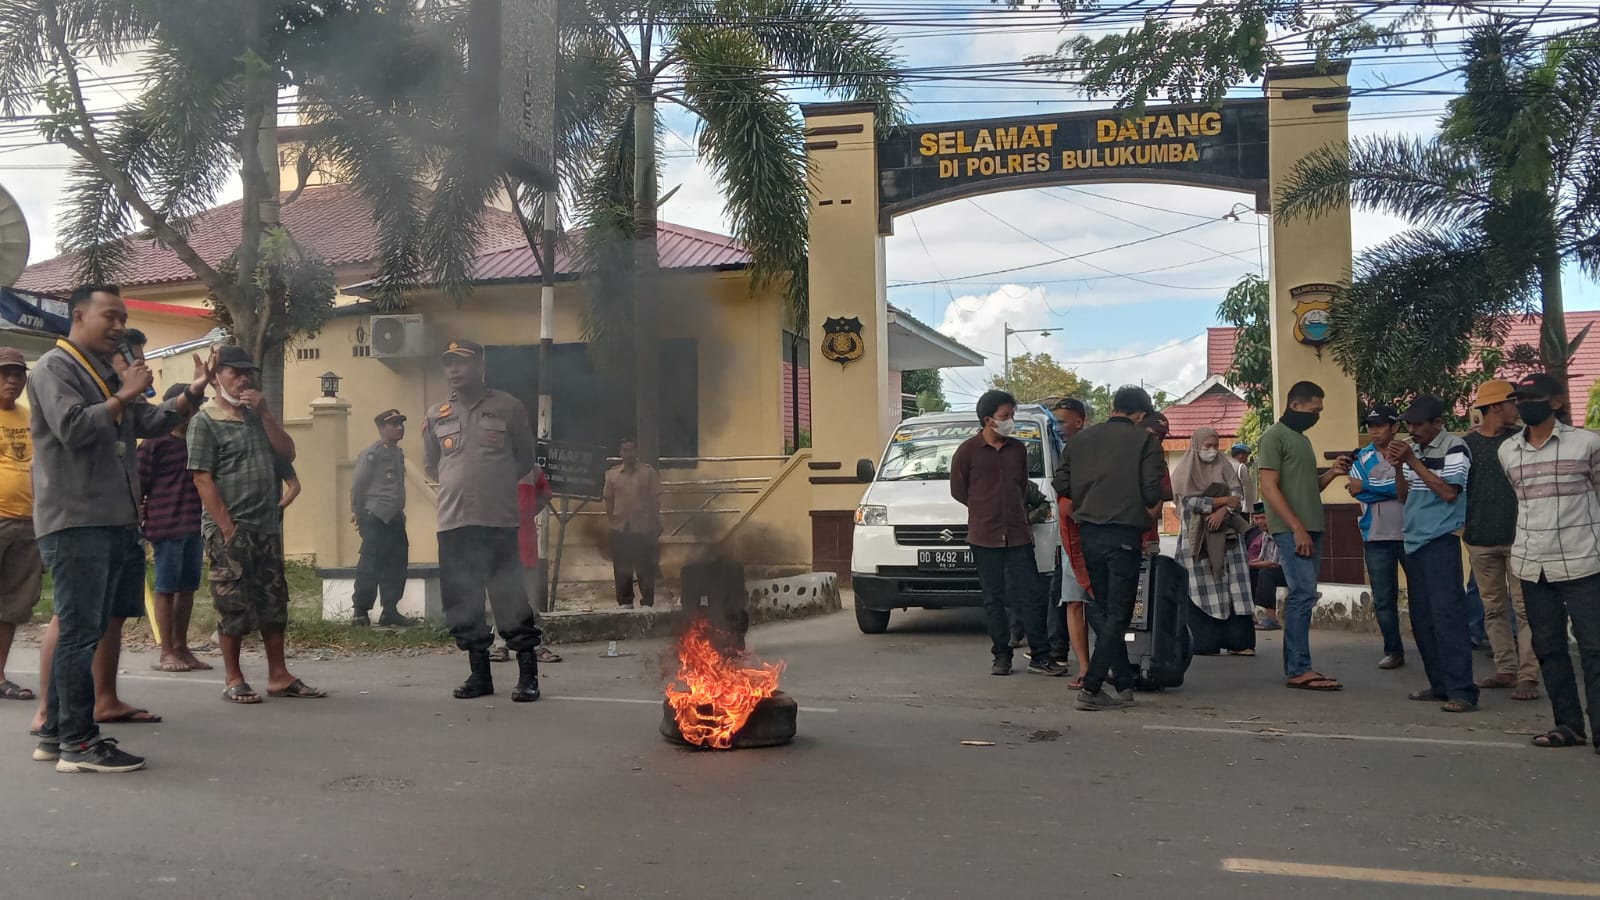 Puluhan warga Desa Batu Karopa gelar aksi unjuk rasa di depan kantor Polres Bulukumba (poto : Hendra wiranto/Beritasulsel.com)